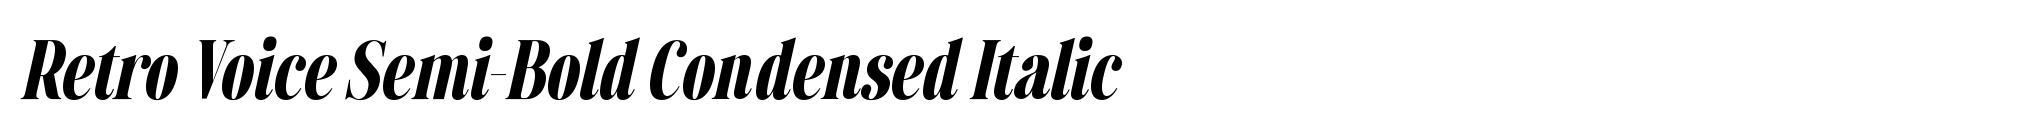 Retro Voice Semi-Bold Condensed Italic image